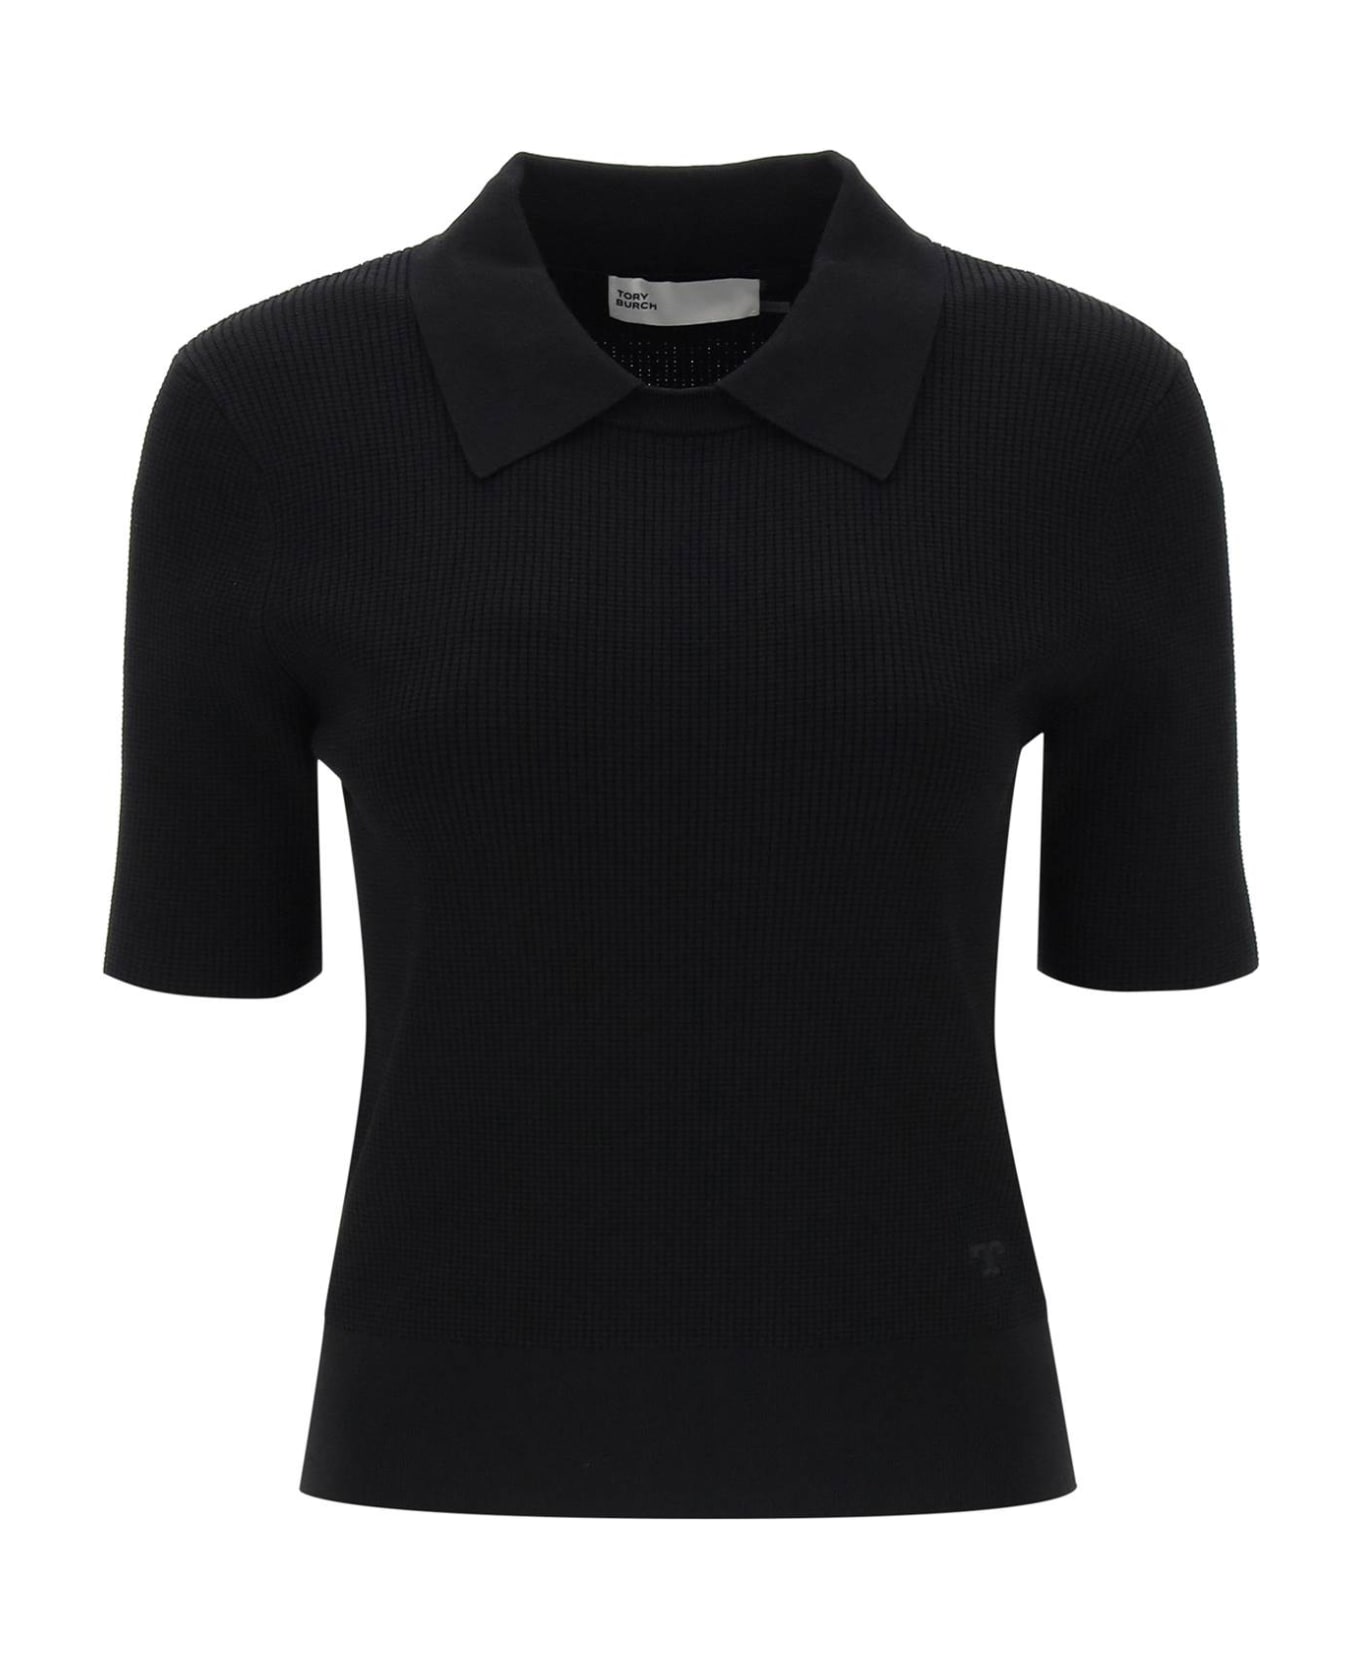 Tory Burch Knitted Polo Shirt - BLACK (Black)